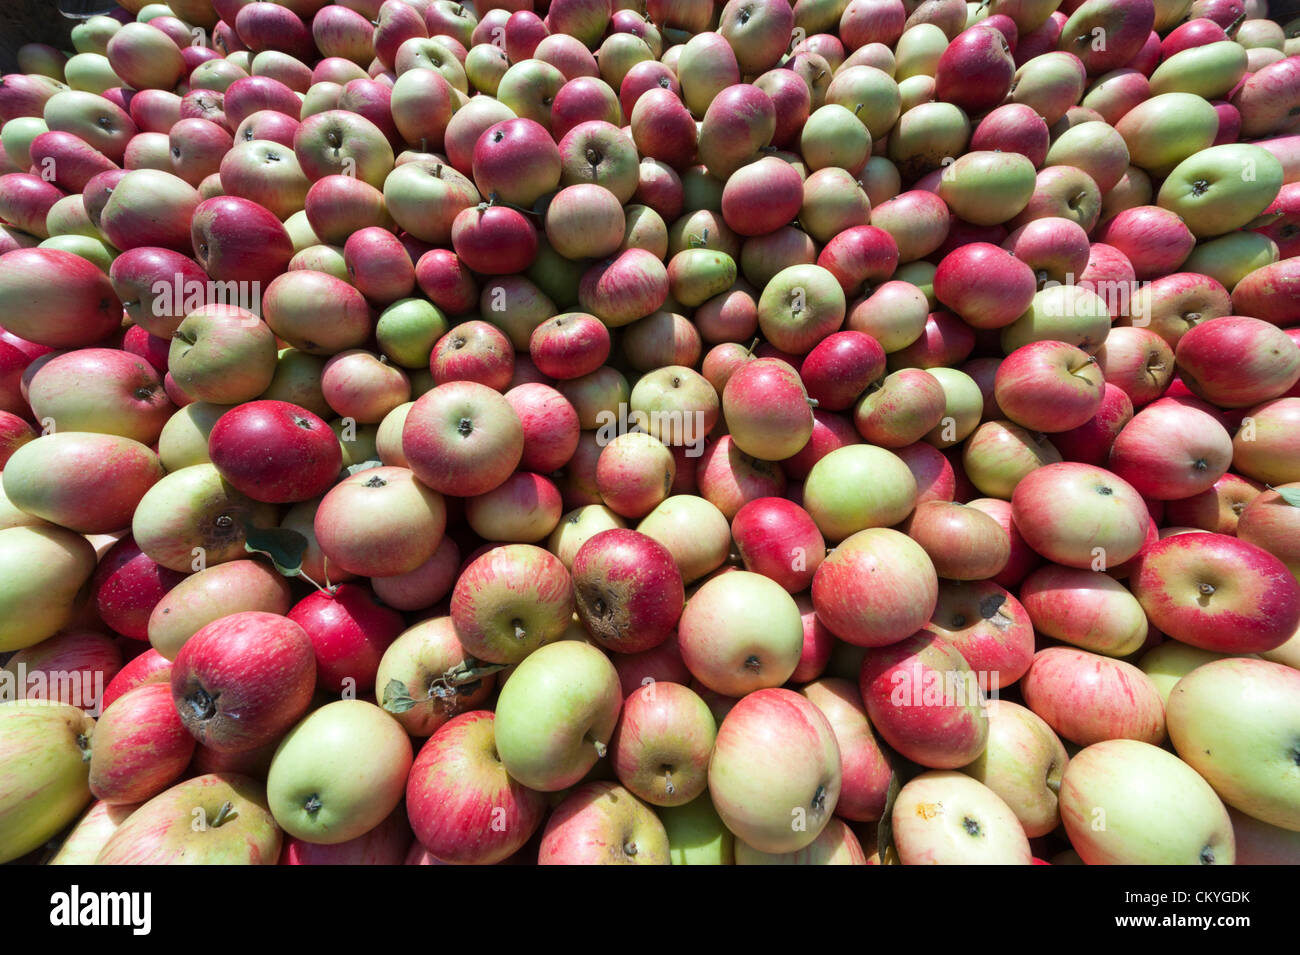 Wisbech, UK. 3. September 2012. Entdeckung-Äpfel bereit zum Pressen bei Watergull Obstgärten, Wisbech Cambridgeshire UK. Dies war der erste Tag, die Äpfel für Saft in der Saison 2012 gedrückt wurden.  Diese frühe Sorte von Apple bereit für die Abfüllung wurden mehr als 9000 Liter Saft entzogen. Stockfoto